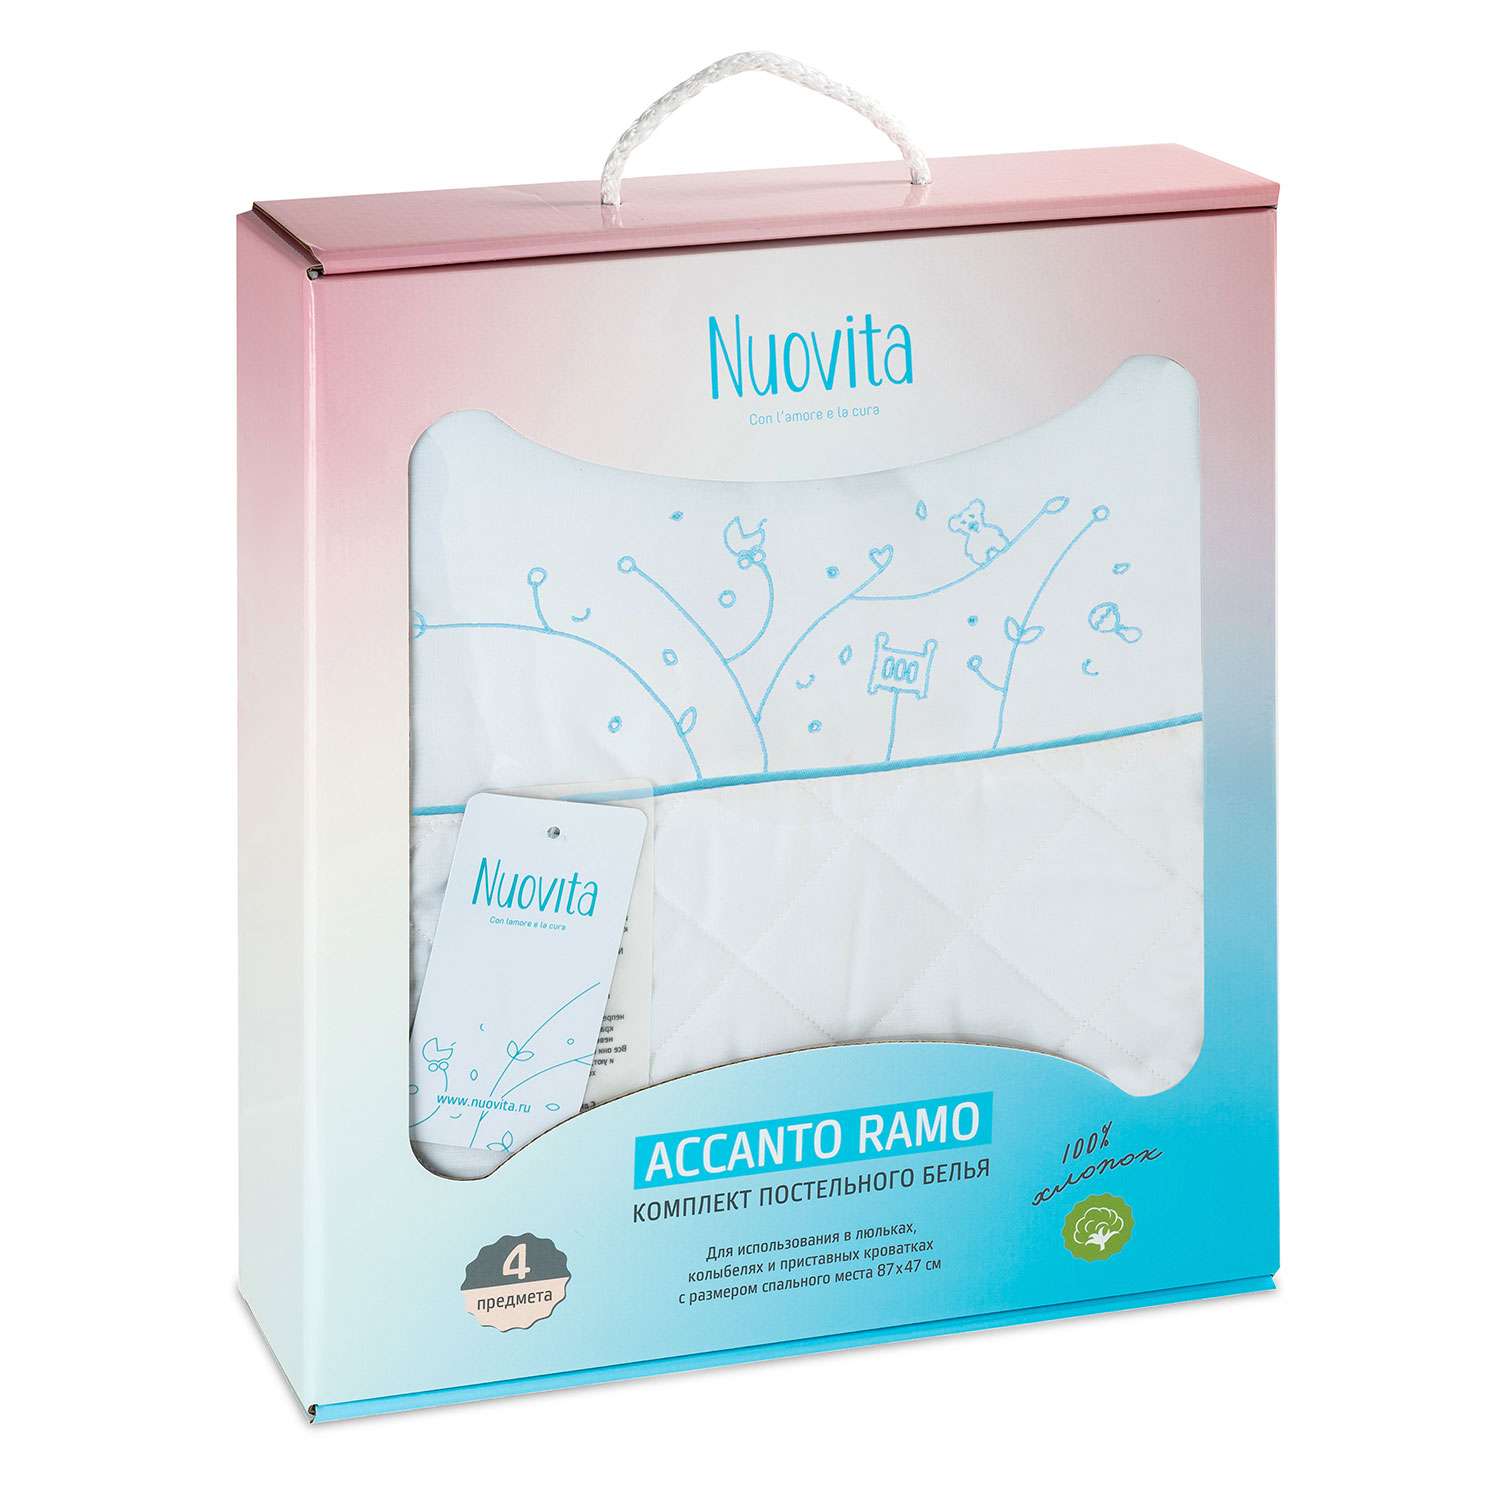 Комплект постельного белья Nuovita Accanto Ramo 4 предмета голубой - фото 1